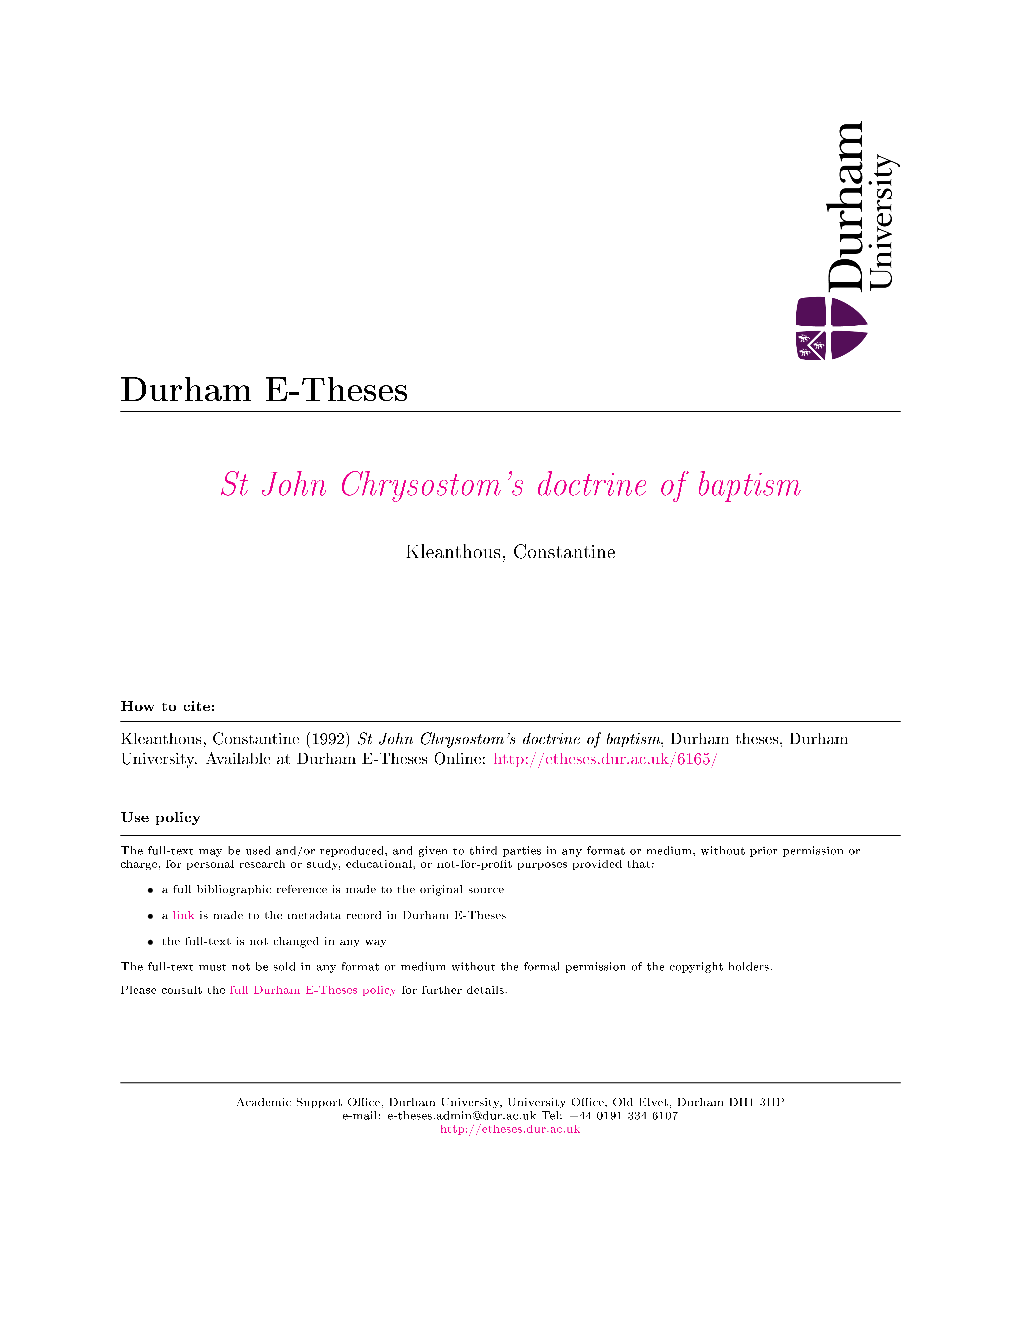 St John Chrysostom's Doctrine of Baptism